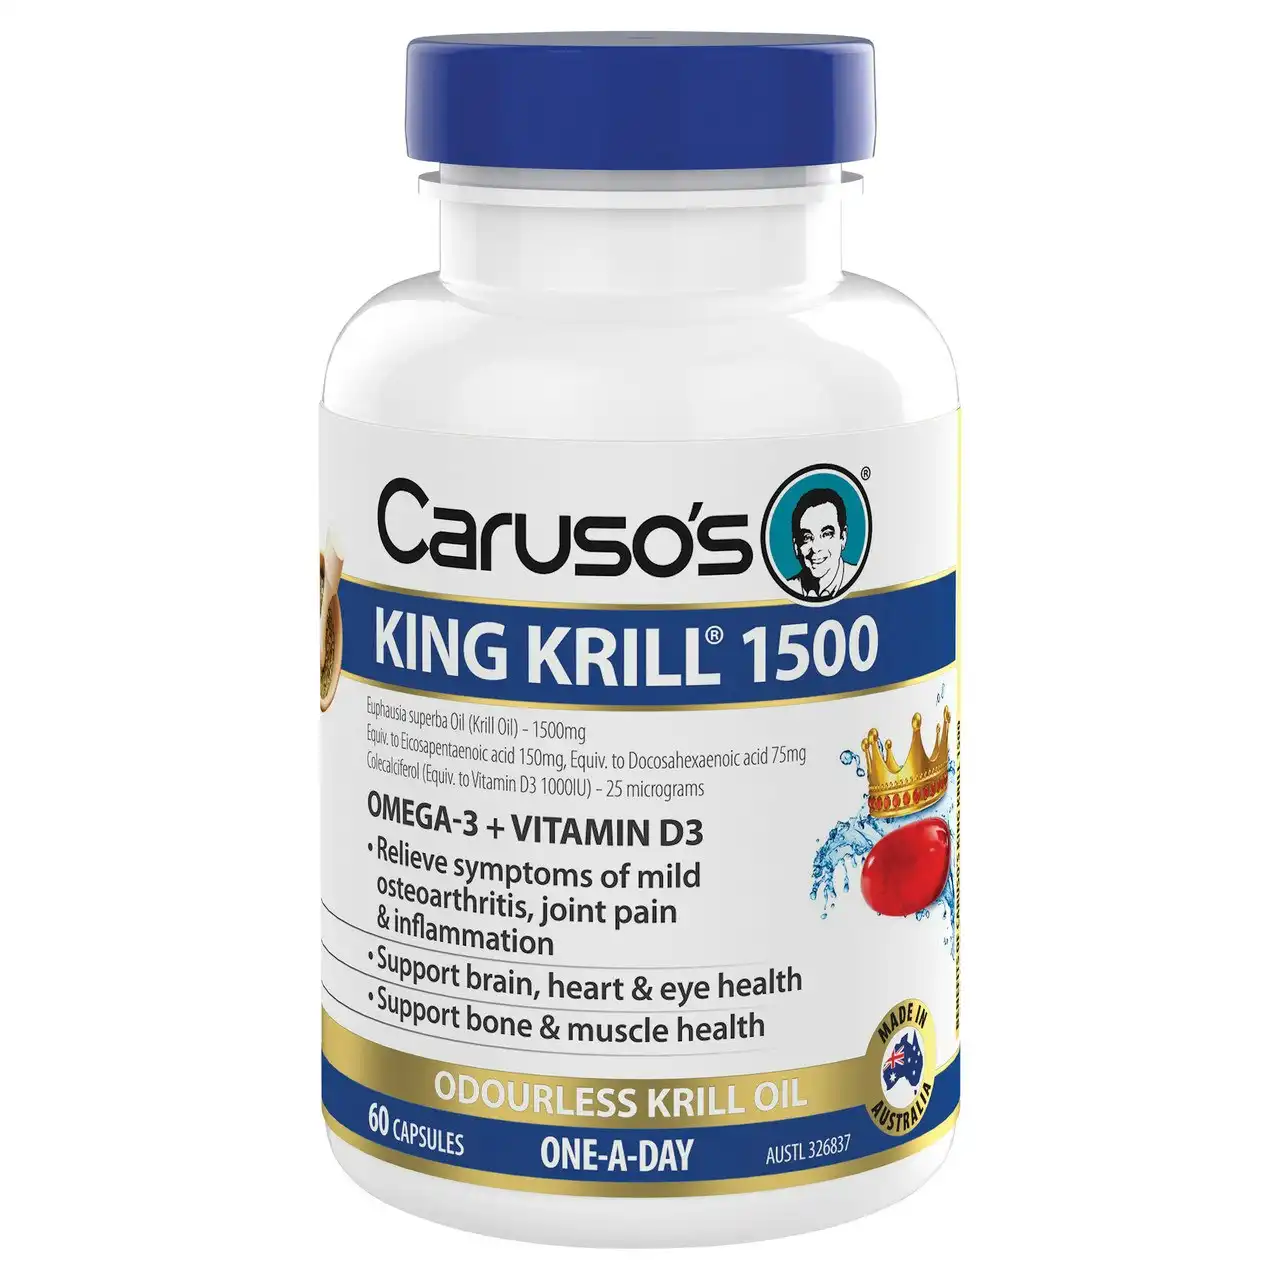 Caruso's King Krill 1500